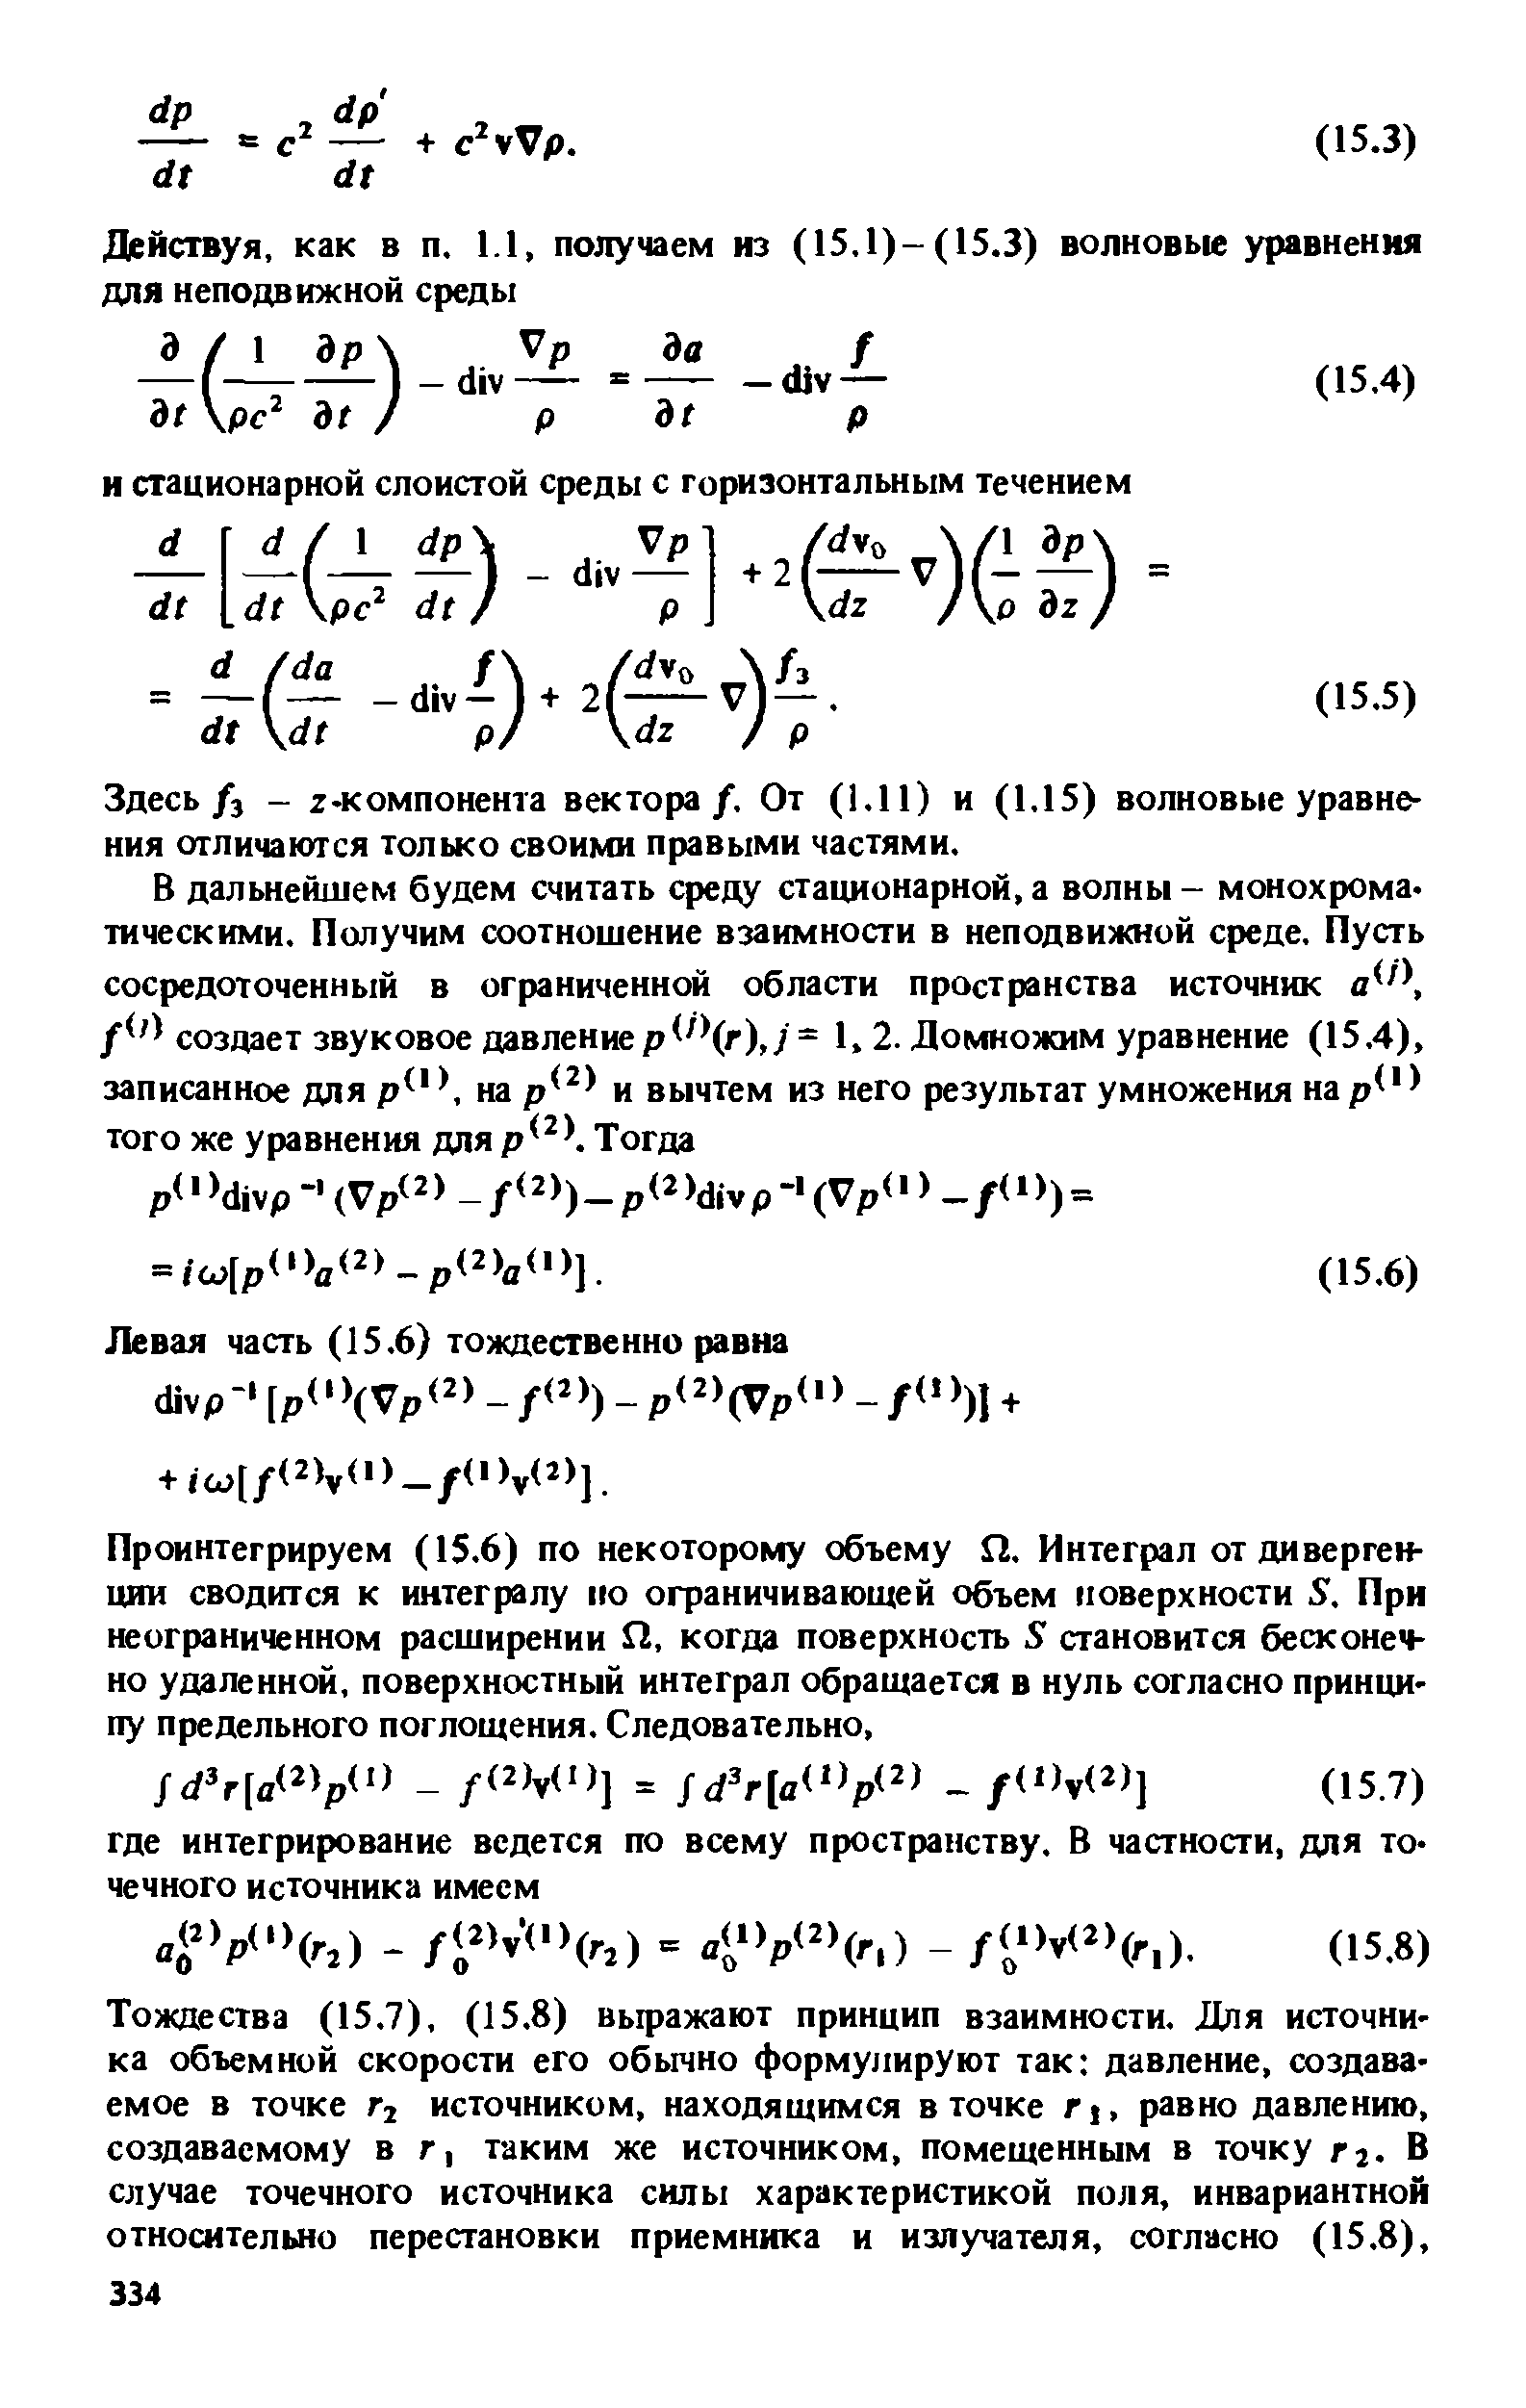 Здесь/з - z-компонента вектора/. От (1.11) и (1.15) волновые уравнения отличаются только своими правыми частями.
